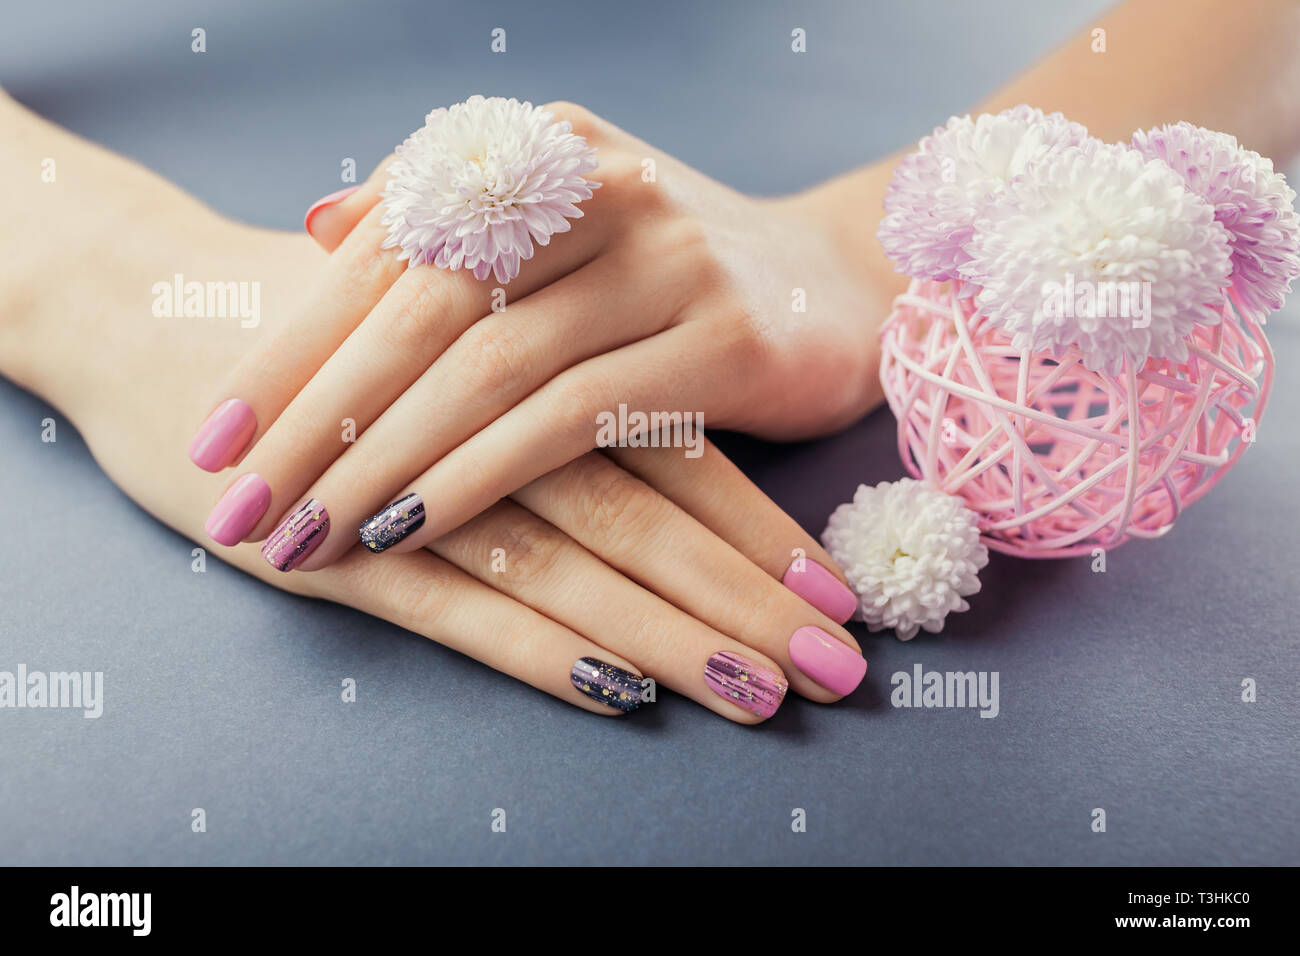 Manucure rose et noir sur les mains avec des fleurs sur fond gris. Nail art et design. Soins du corps Banque D'Images